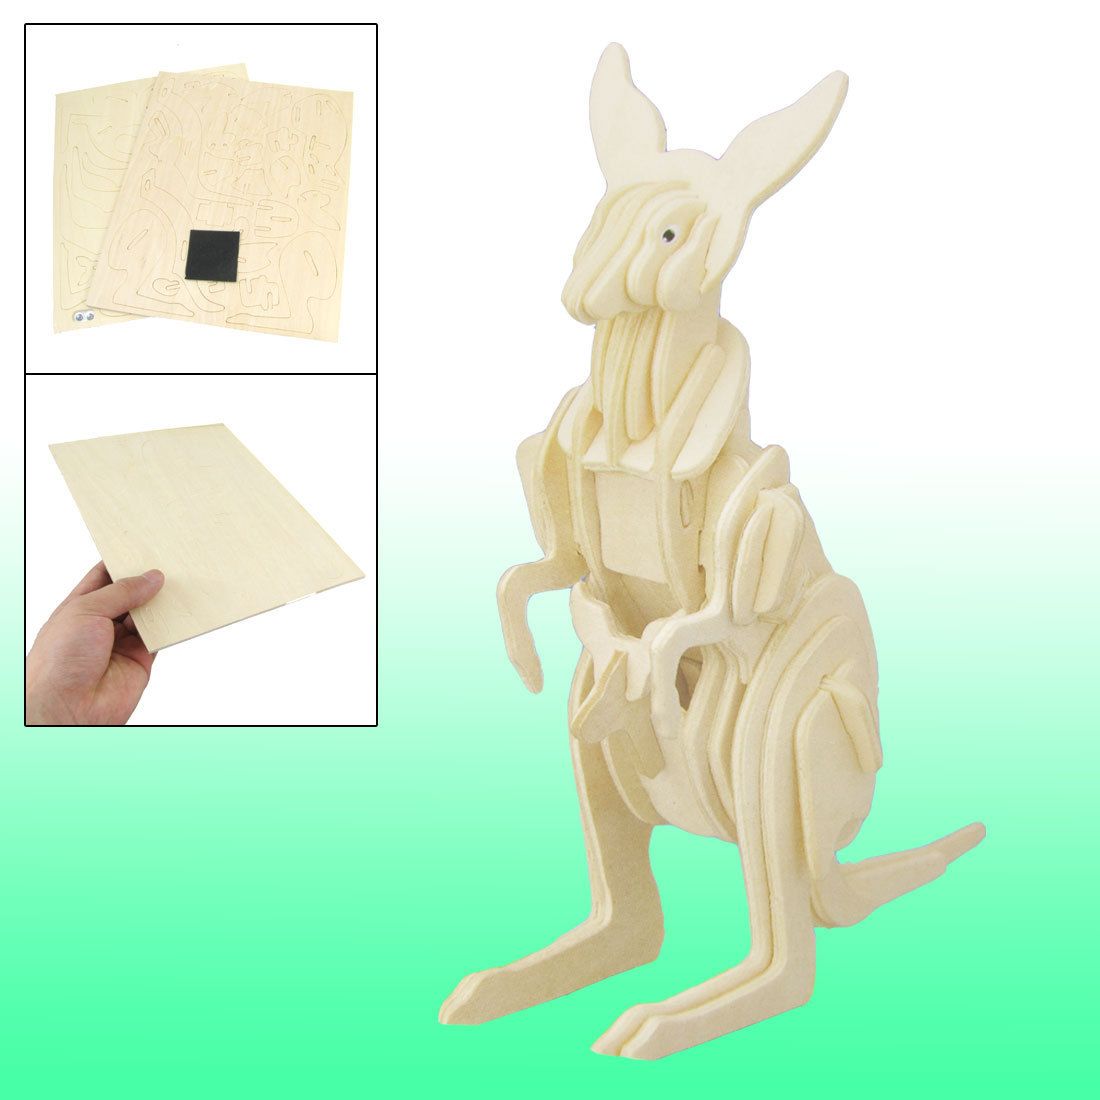 Child Intelligence Assemble Wooden Kangaroo Model Toy